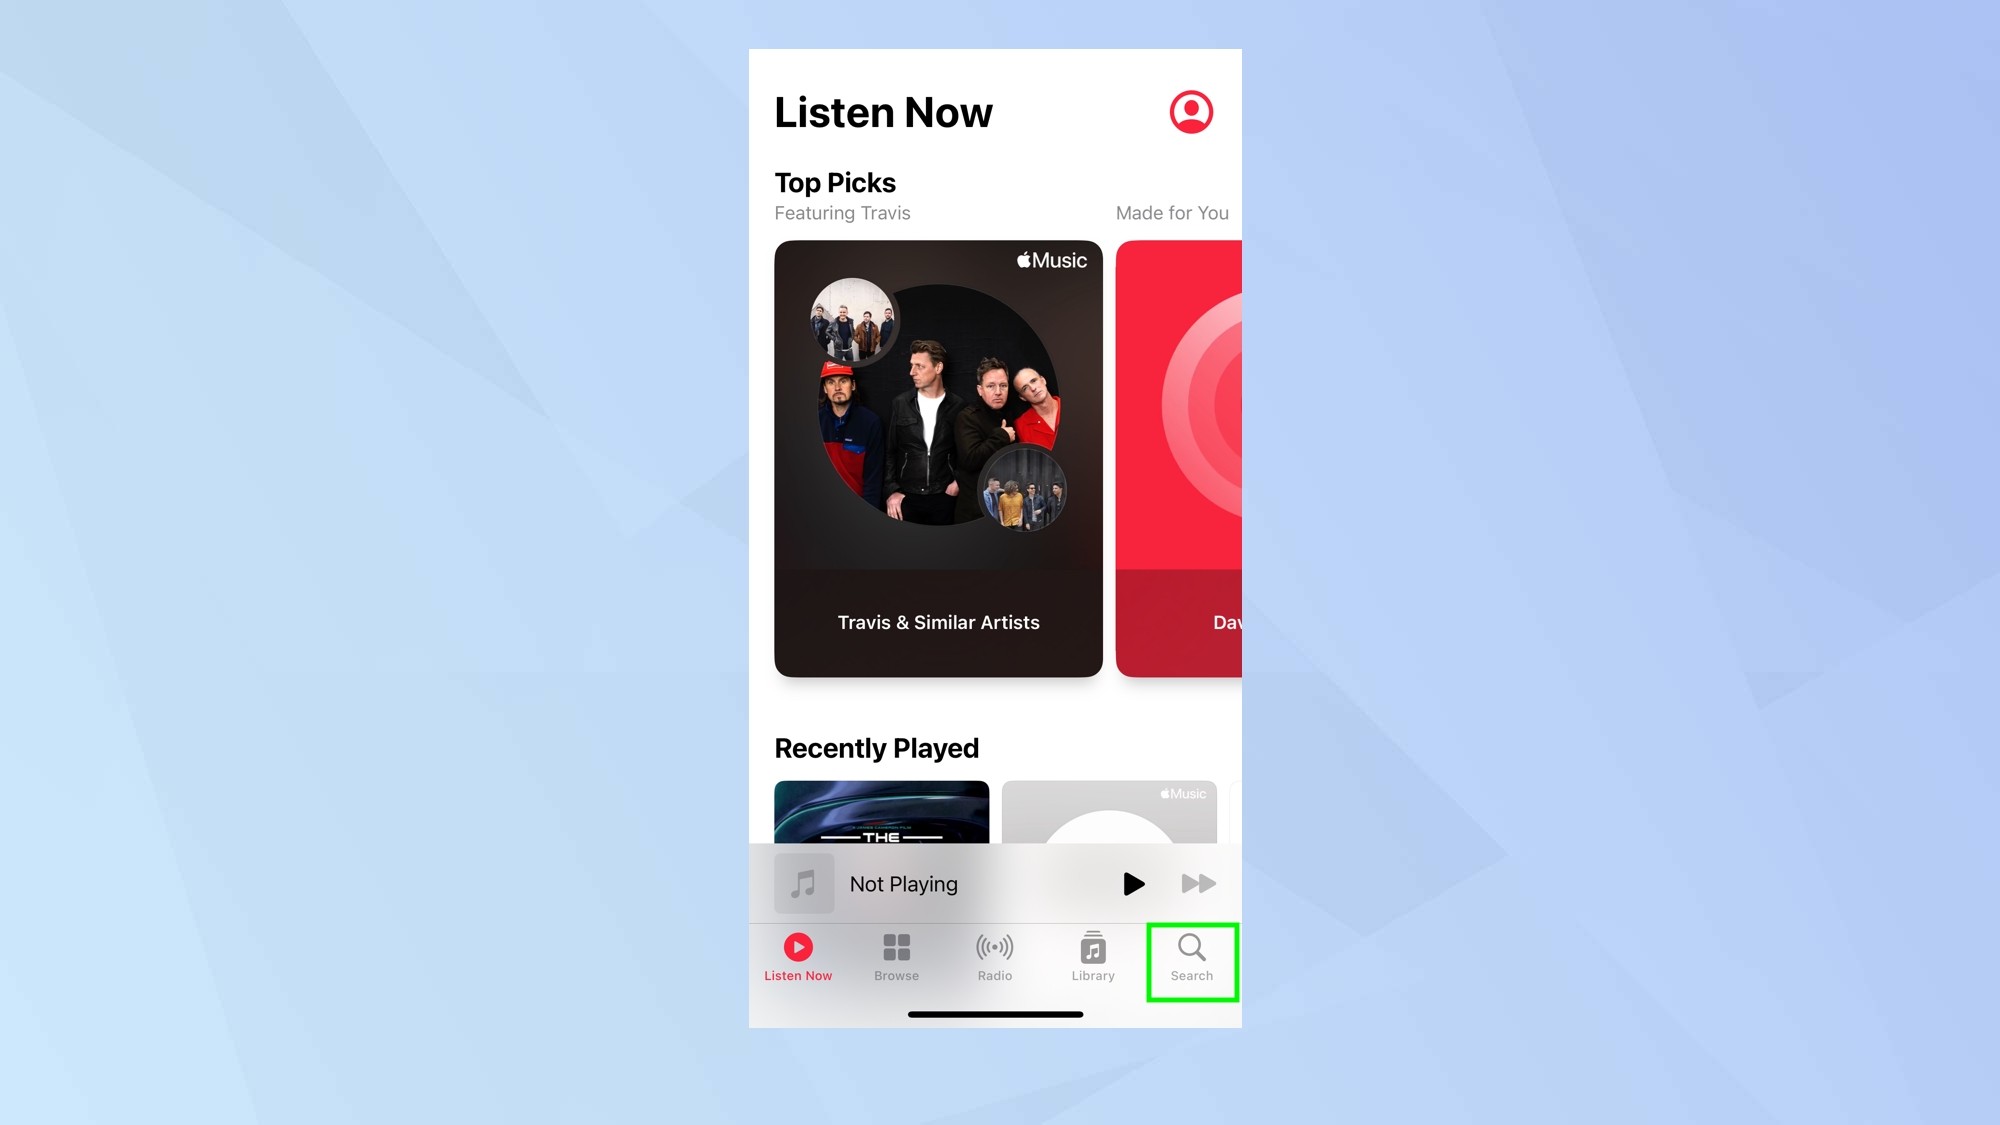 как использовать Apple Music Sing на iPhone